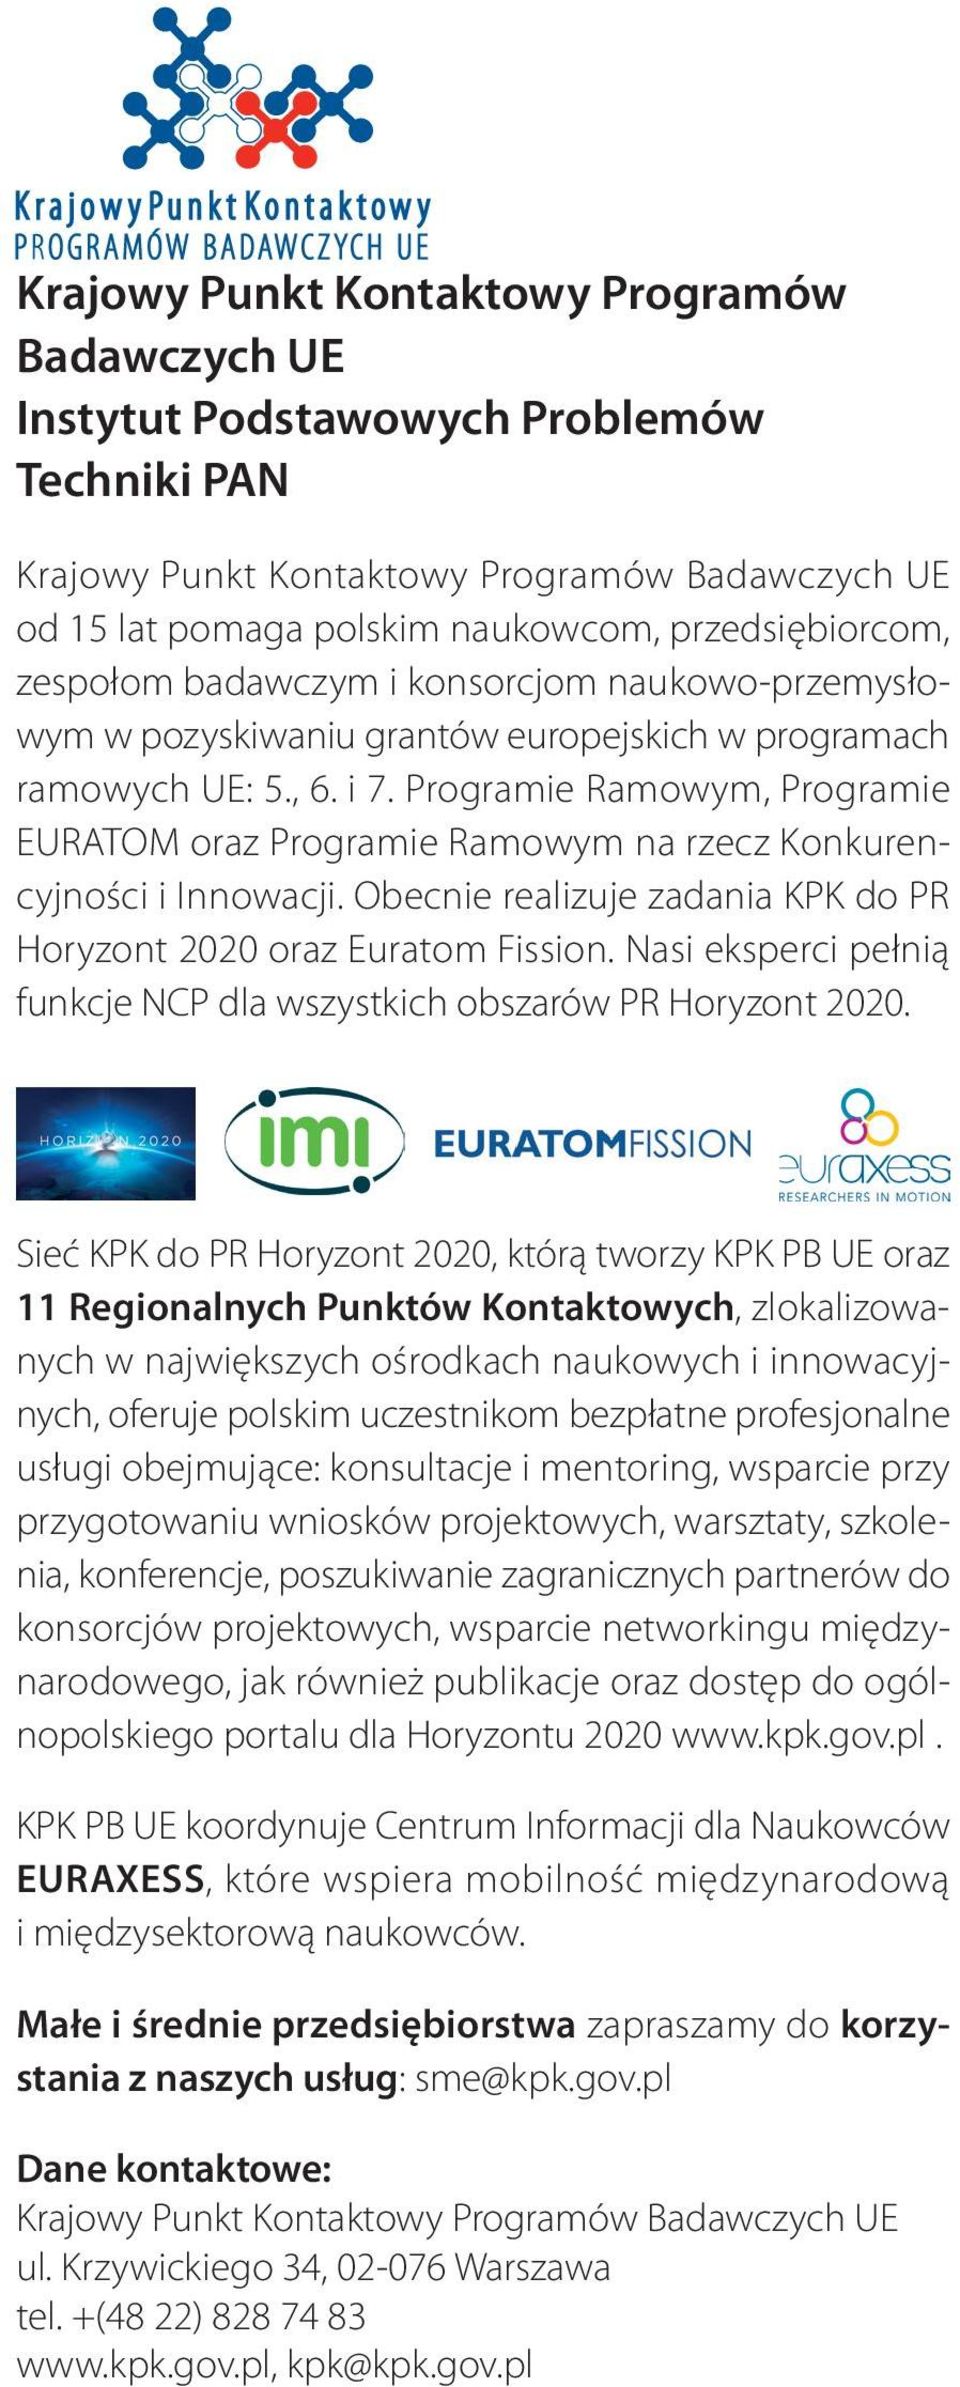 Programie Ramowym, Programie EURATOM oraz Programie Ramowym na rzecz Konkurencyjności i Innowacji. Obecnie realizuje zadania KPK do PR Horyzont 2020 oraz Euratom Fission.